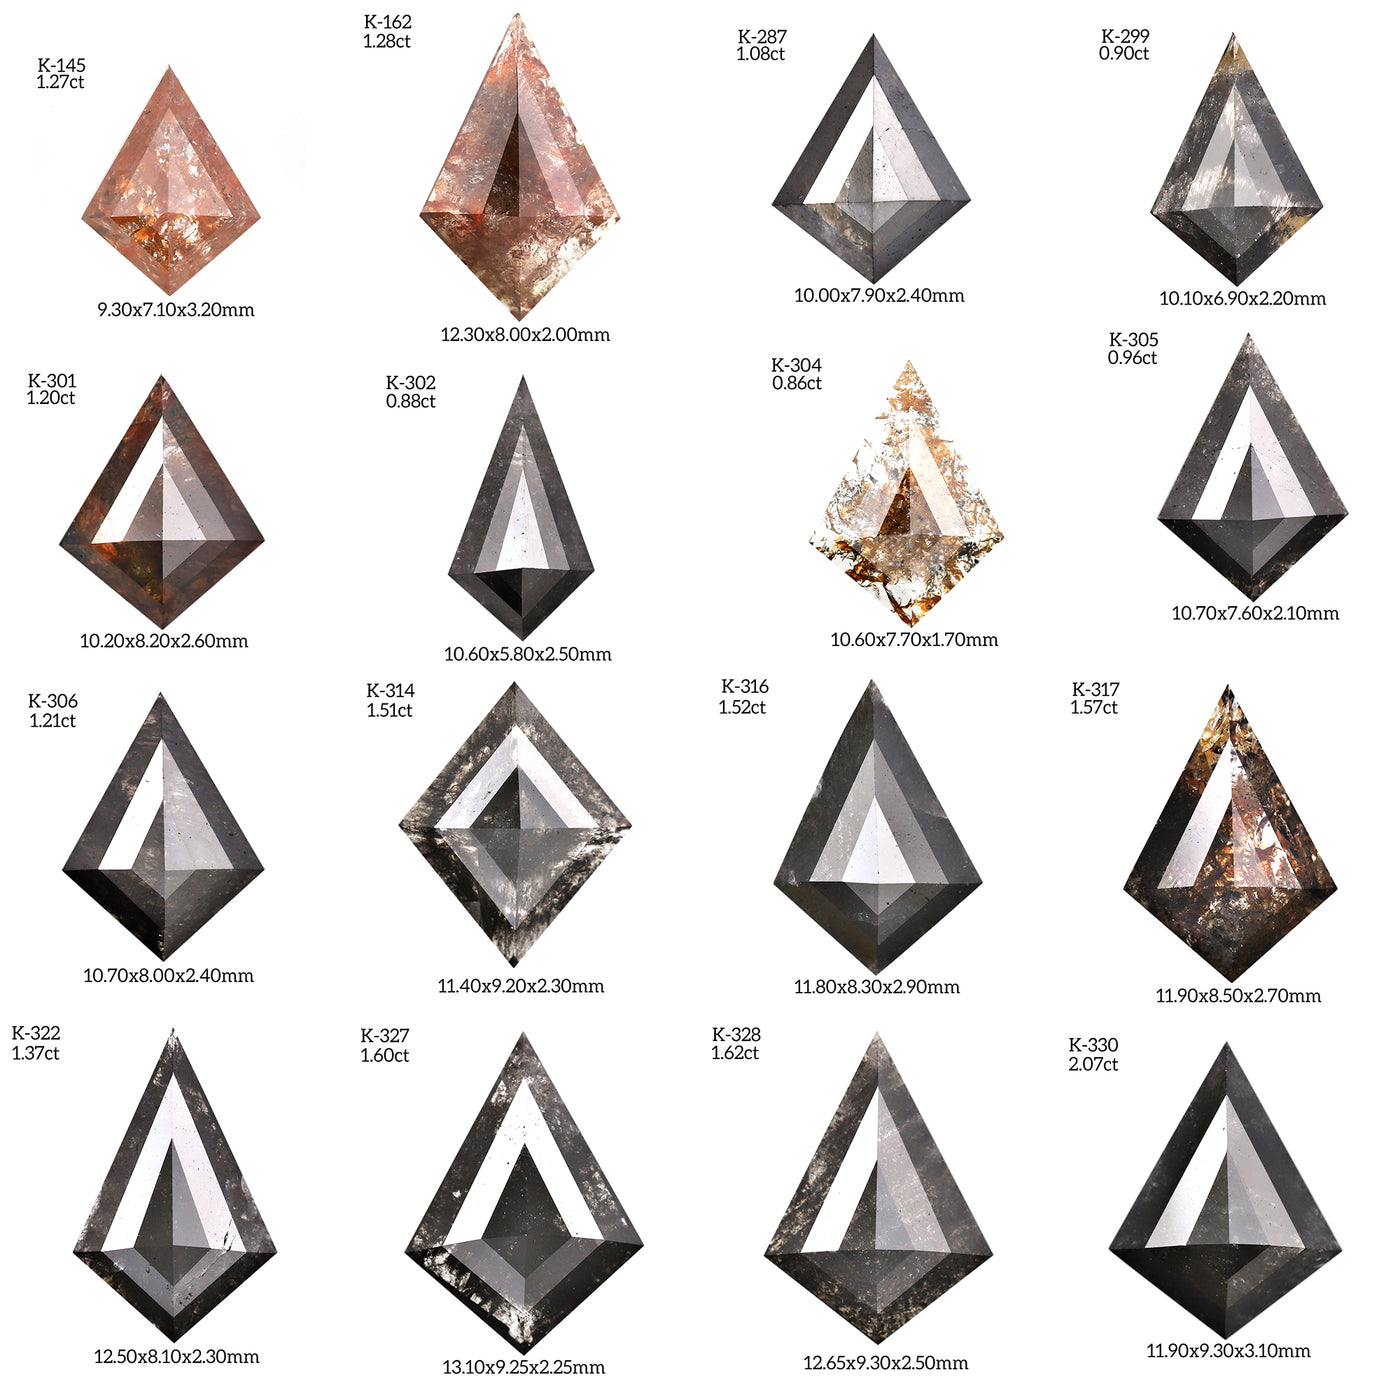 K371 - Salt and pepper kite diamond